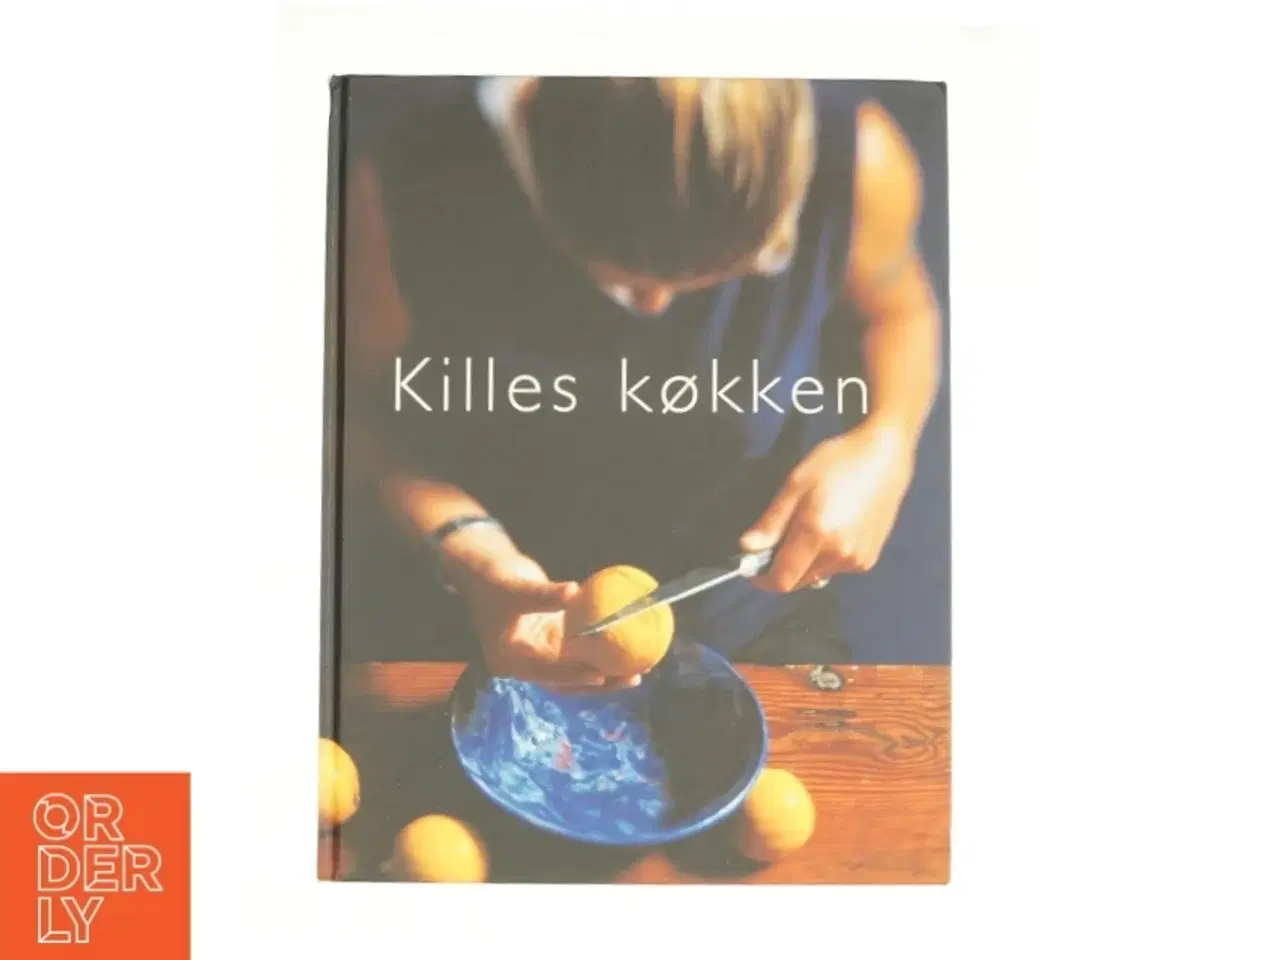 Billede 1 - Killes køkken af Kille Enna fra DVD